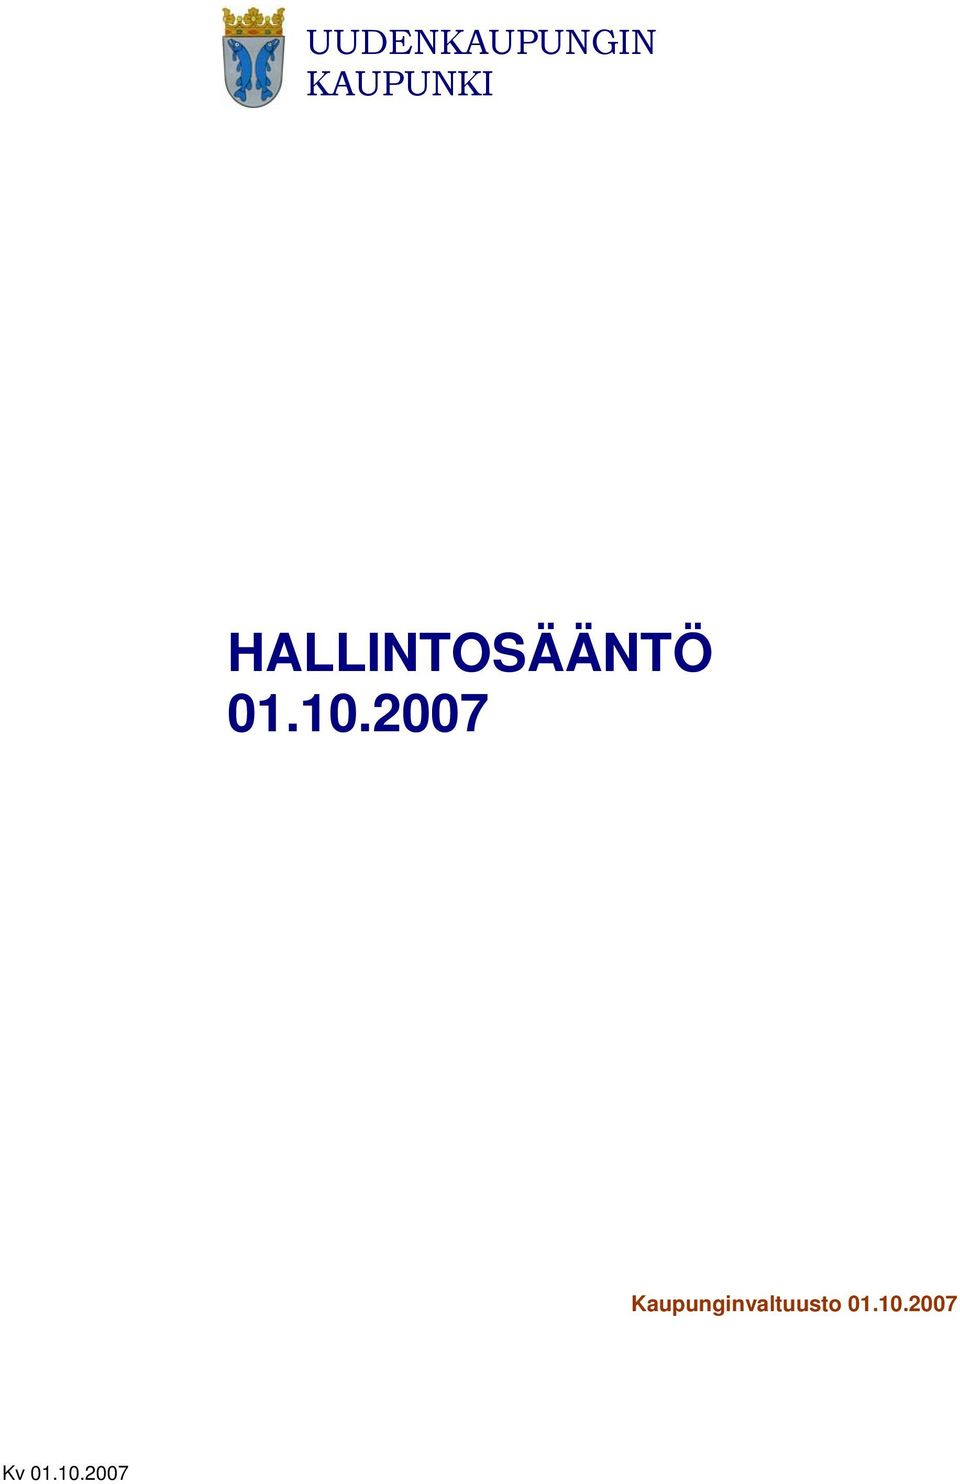 HALLINTOSÄÄNTÖ 01.